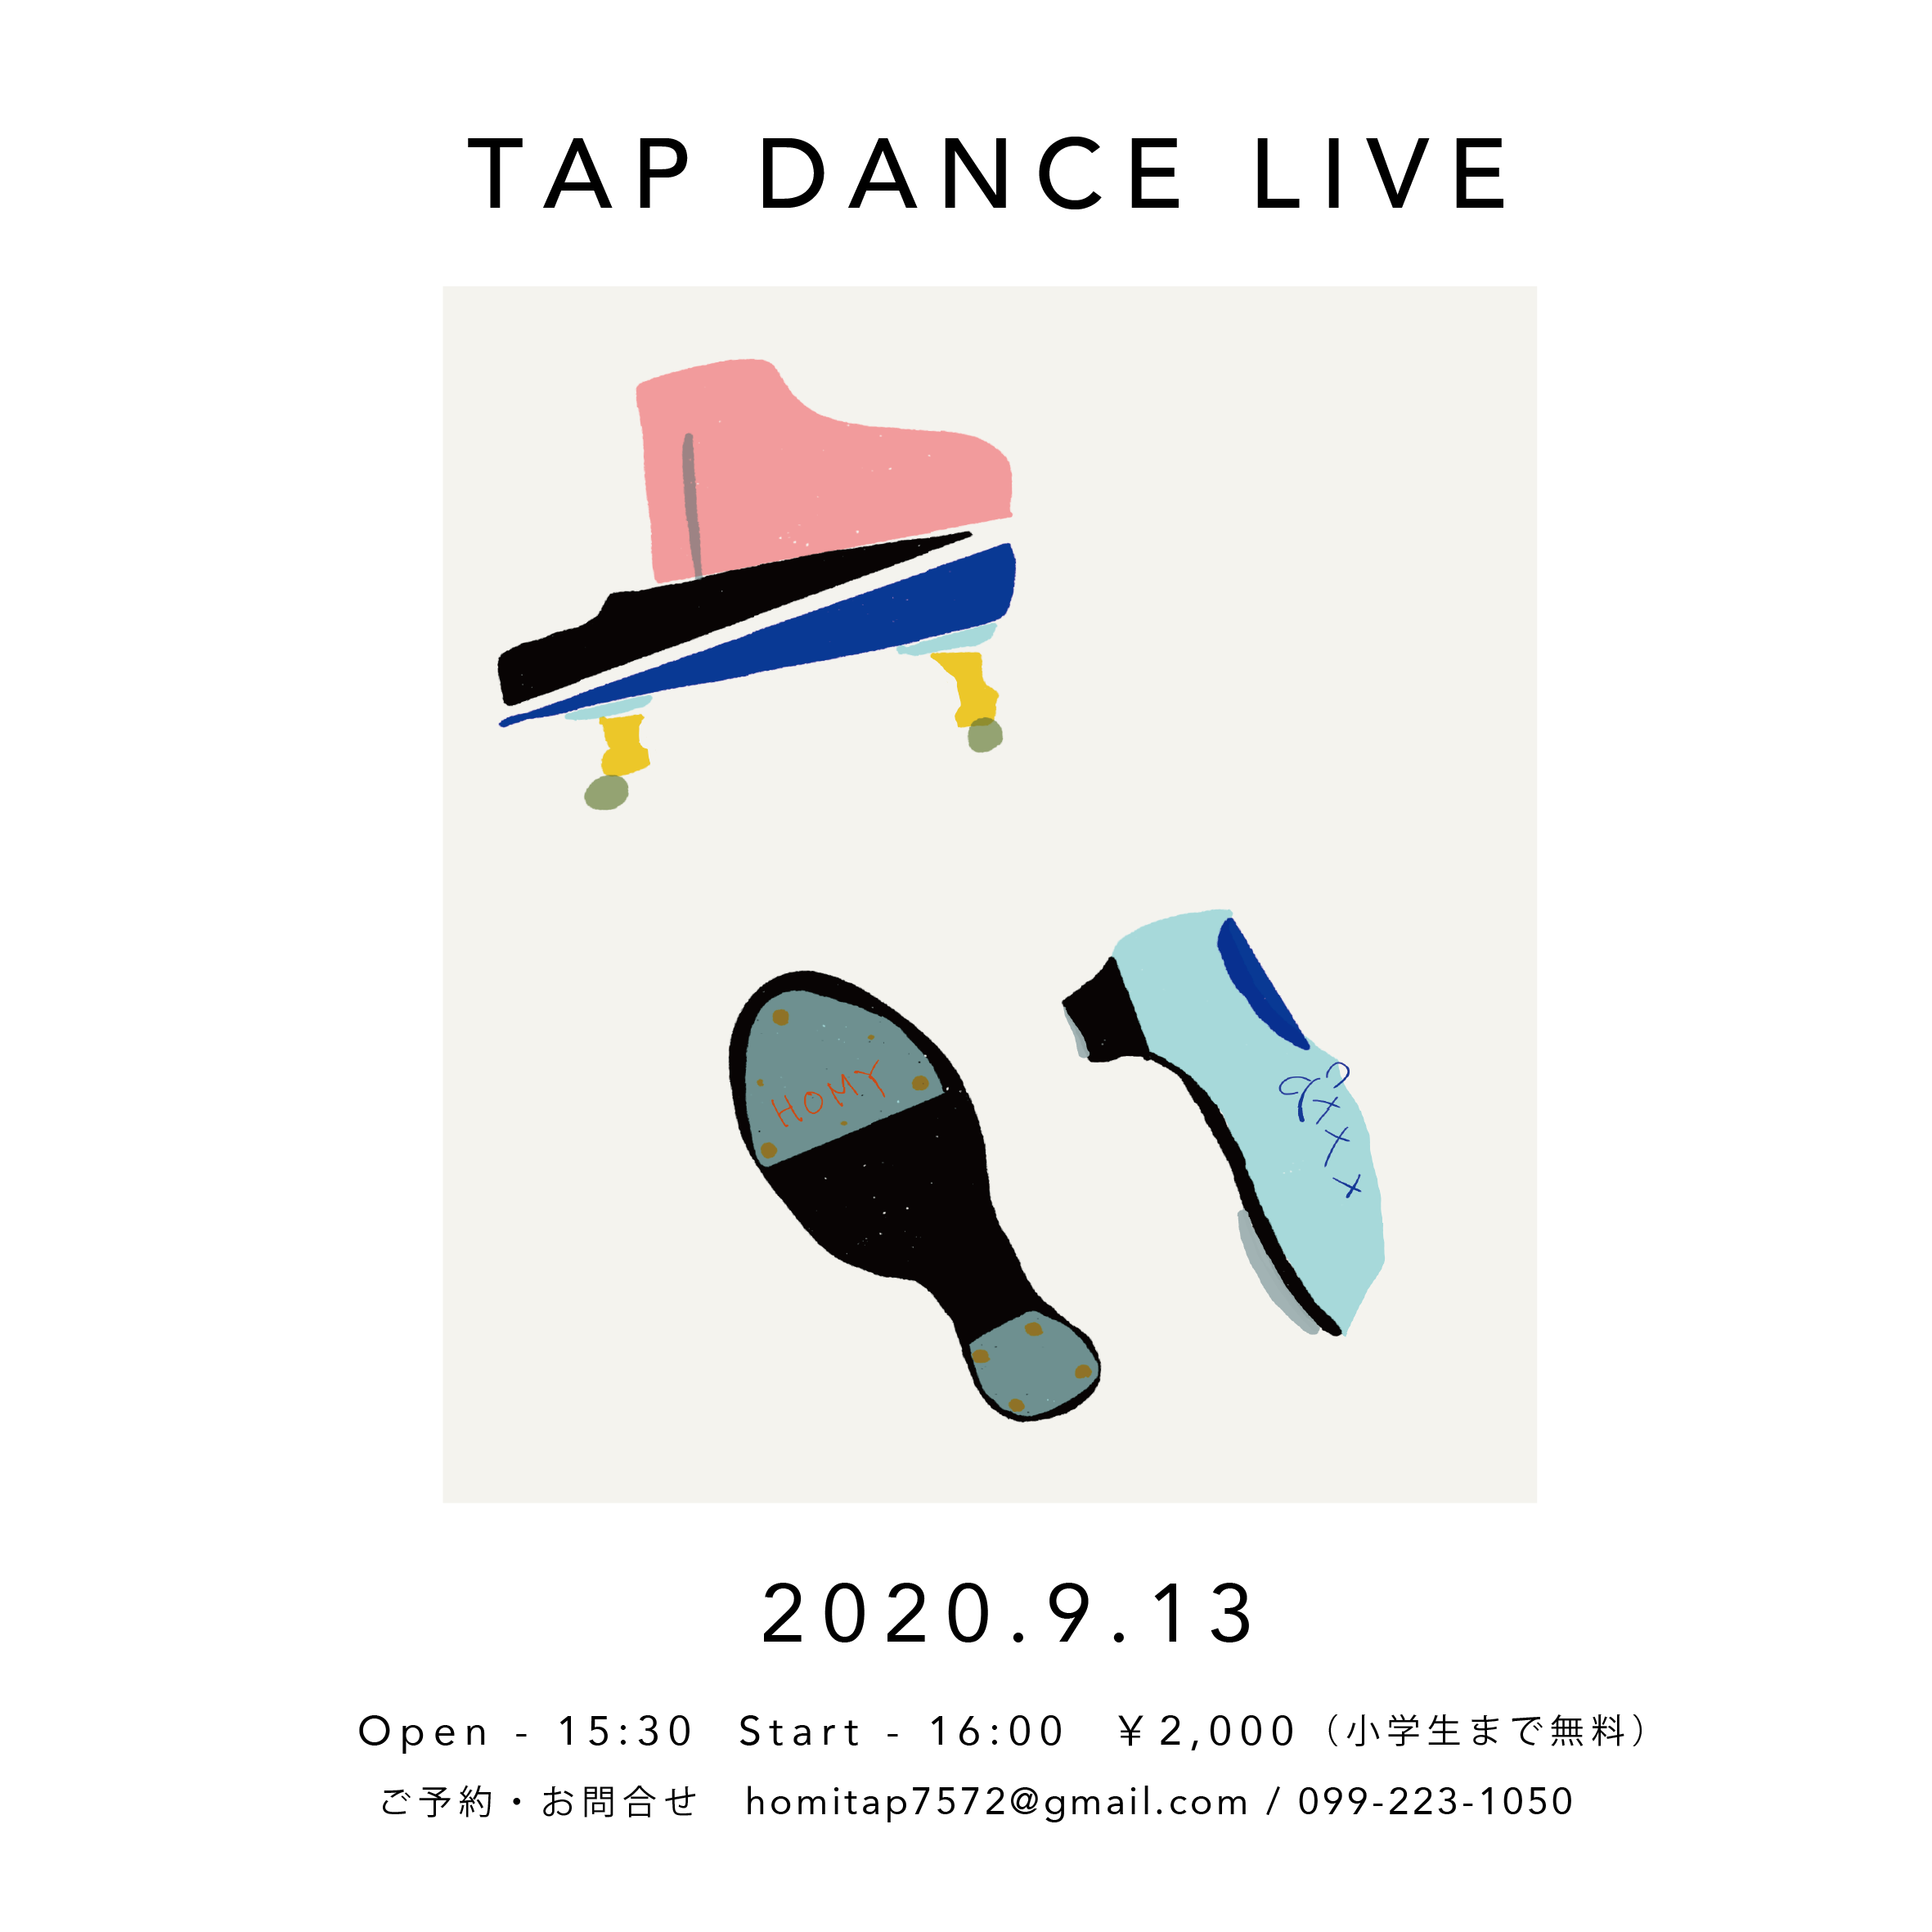 TAP DANCE LIVE 開催のお知らせ